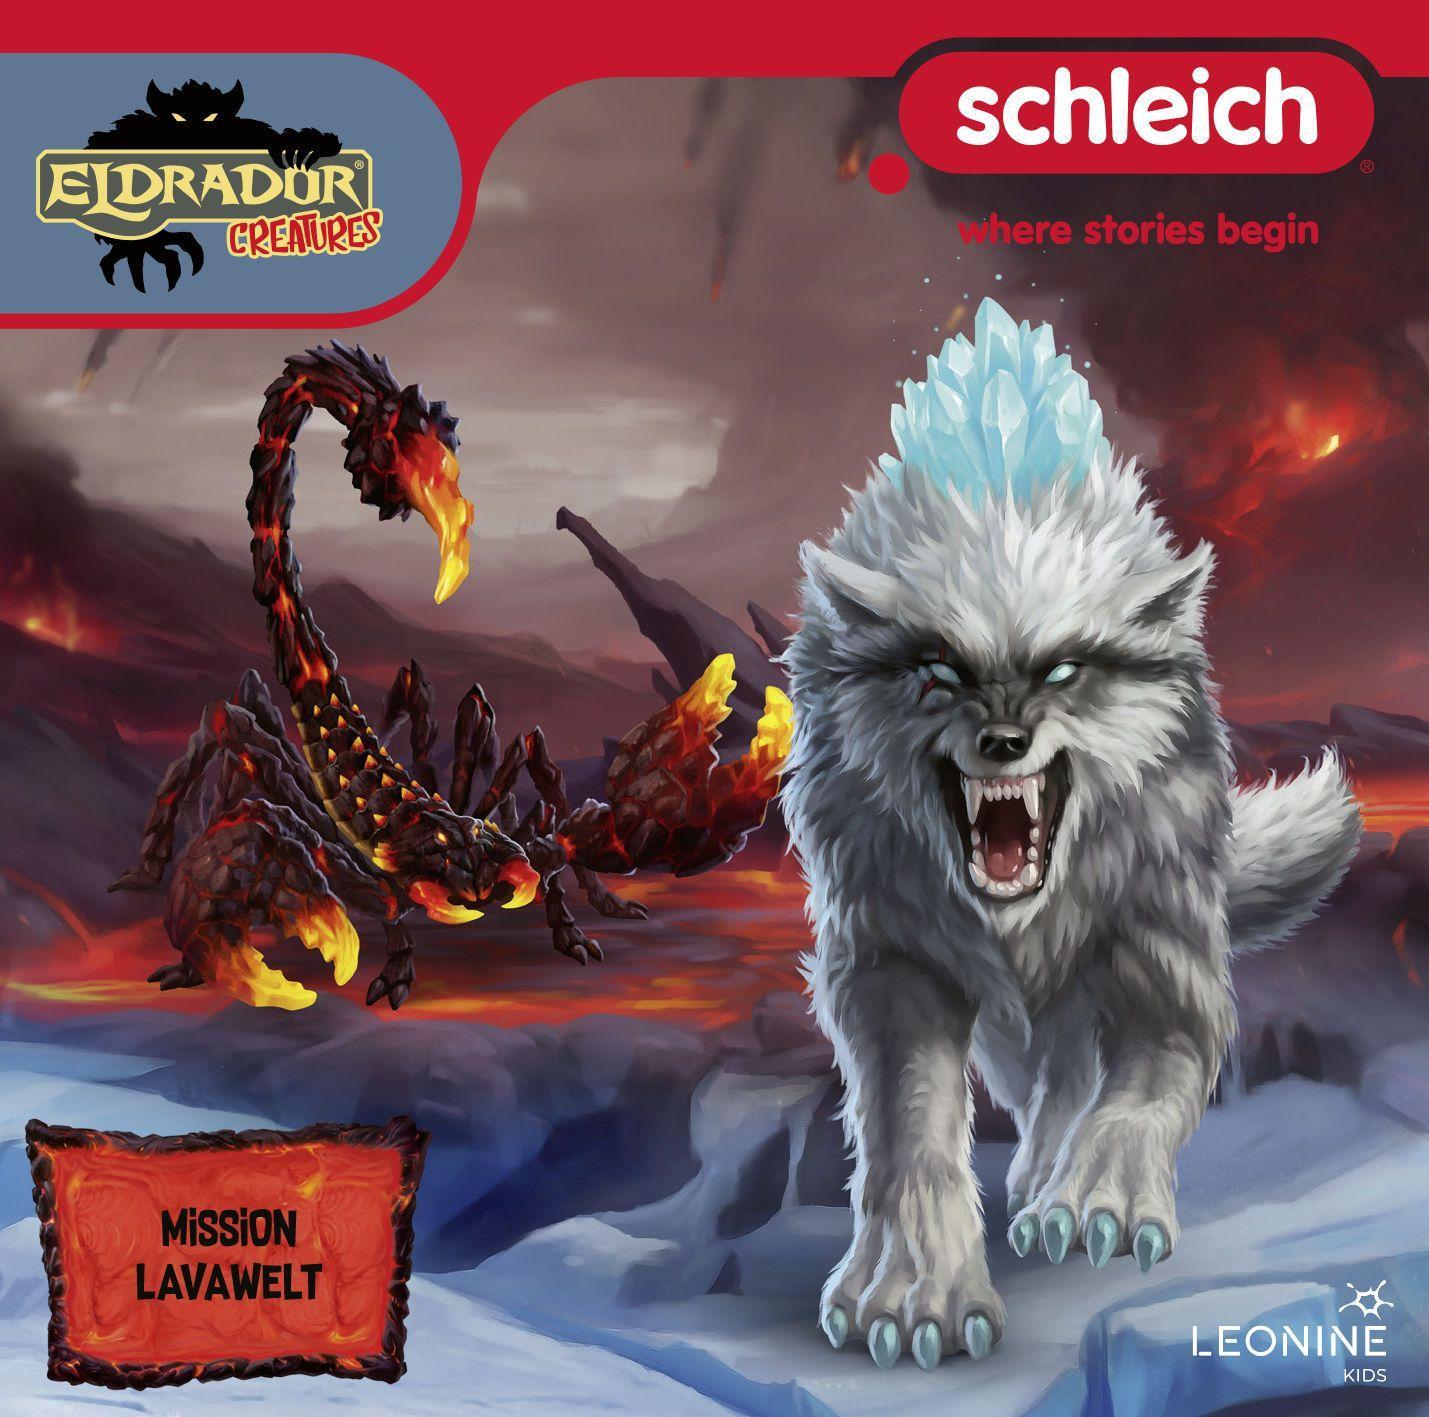 Аудио Schleich Eldrador Creatures. Tl.11, 1 Audio-CD 